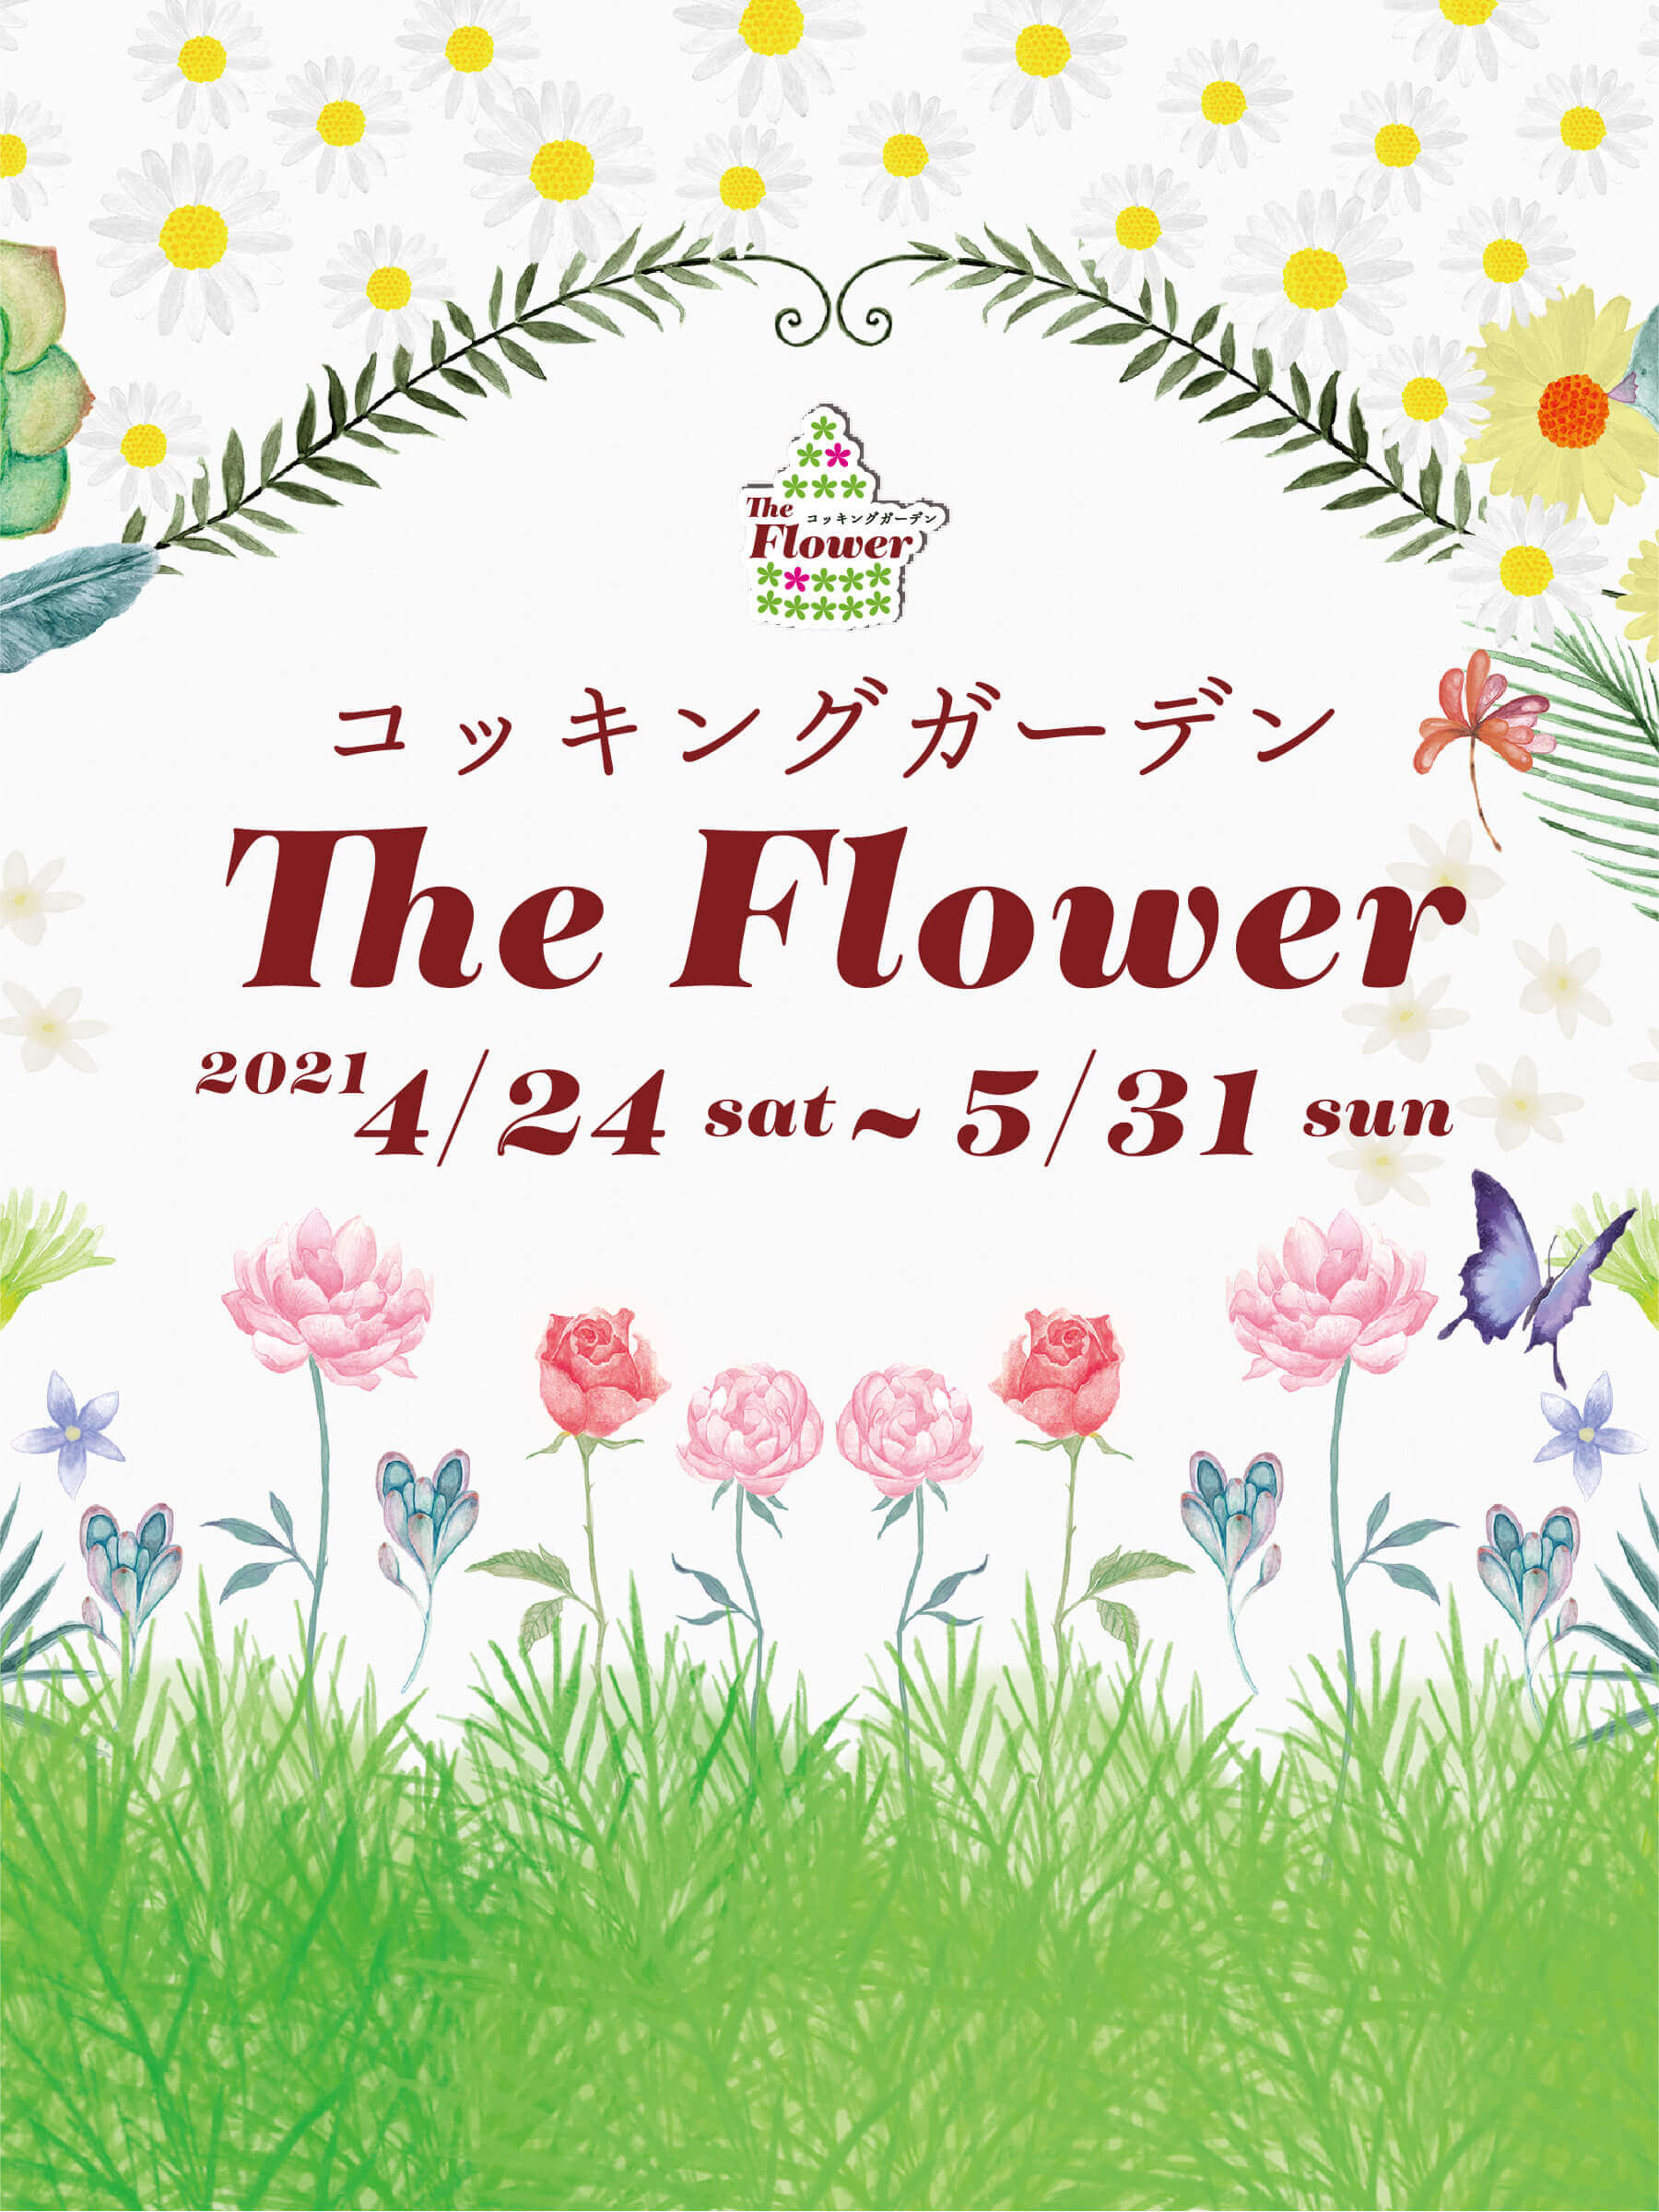 enoshima-cocking-garden-the-flower